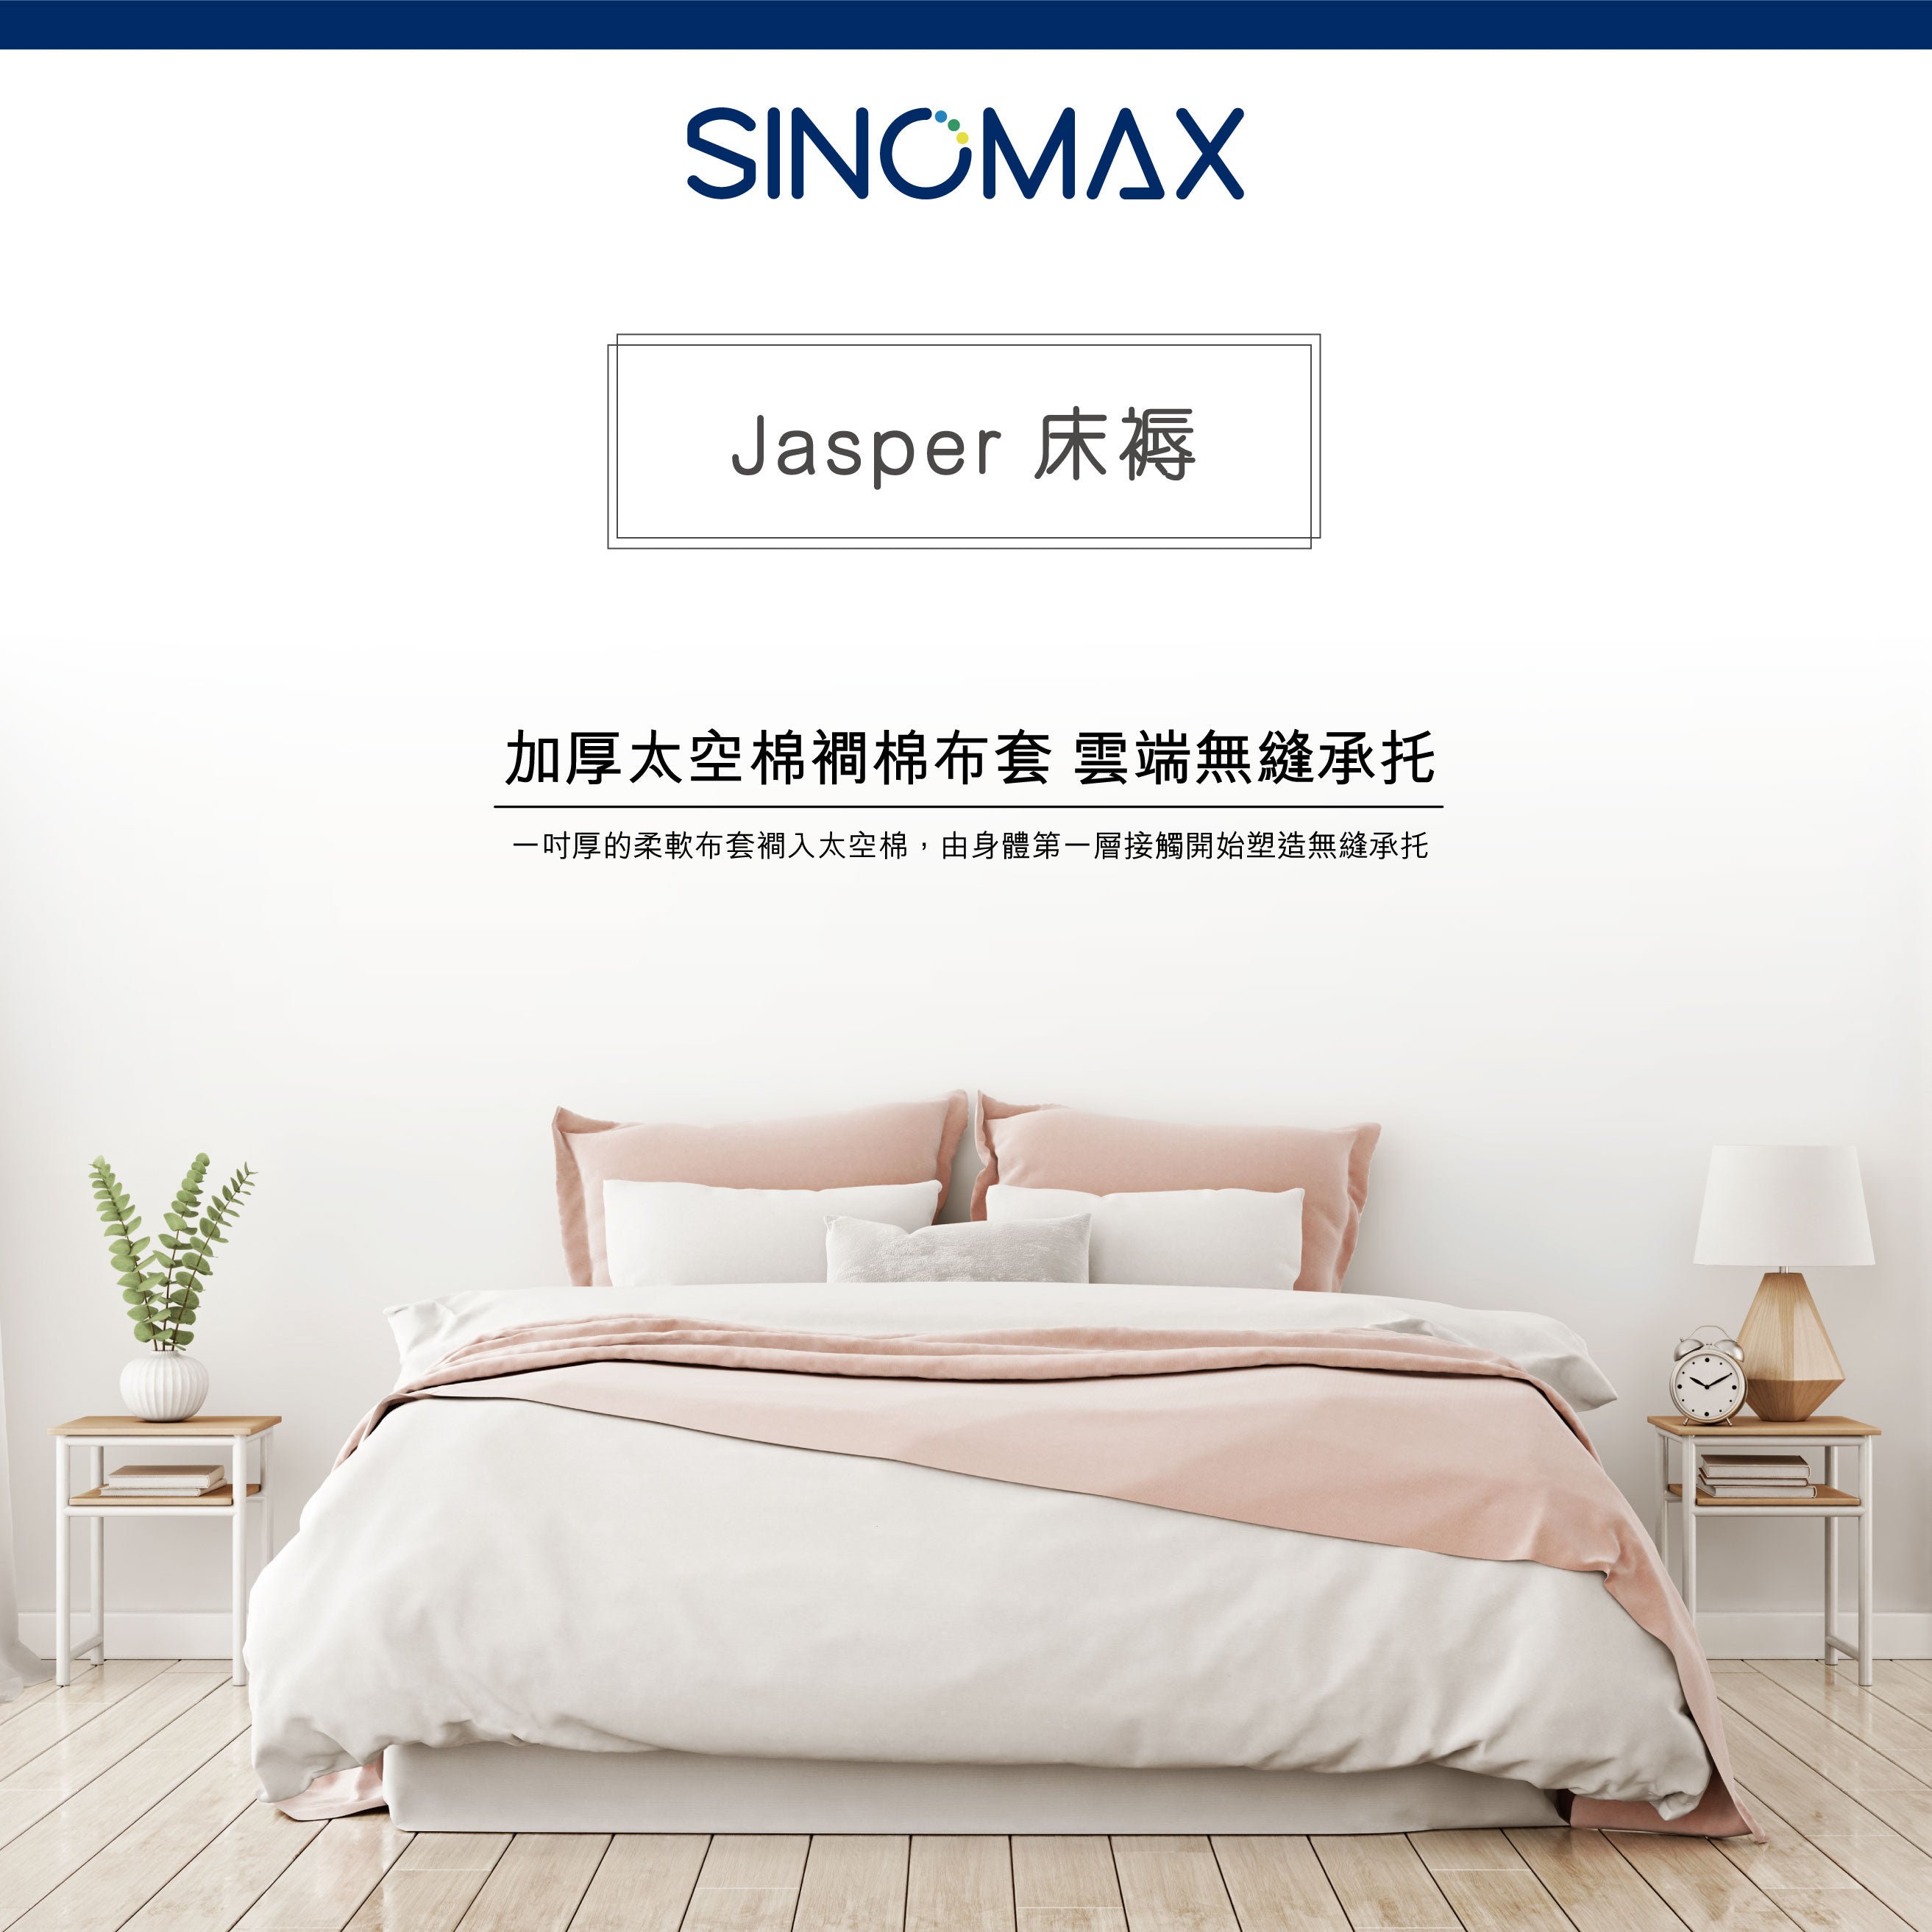 Jasper 床褥 60" x 75" x 8"